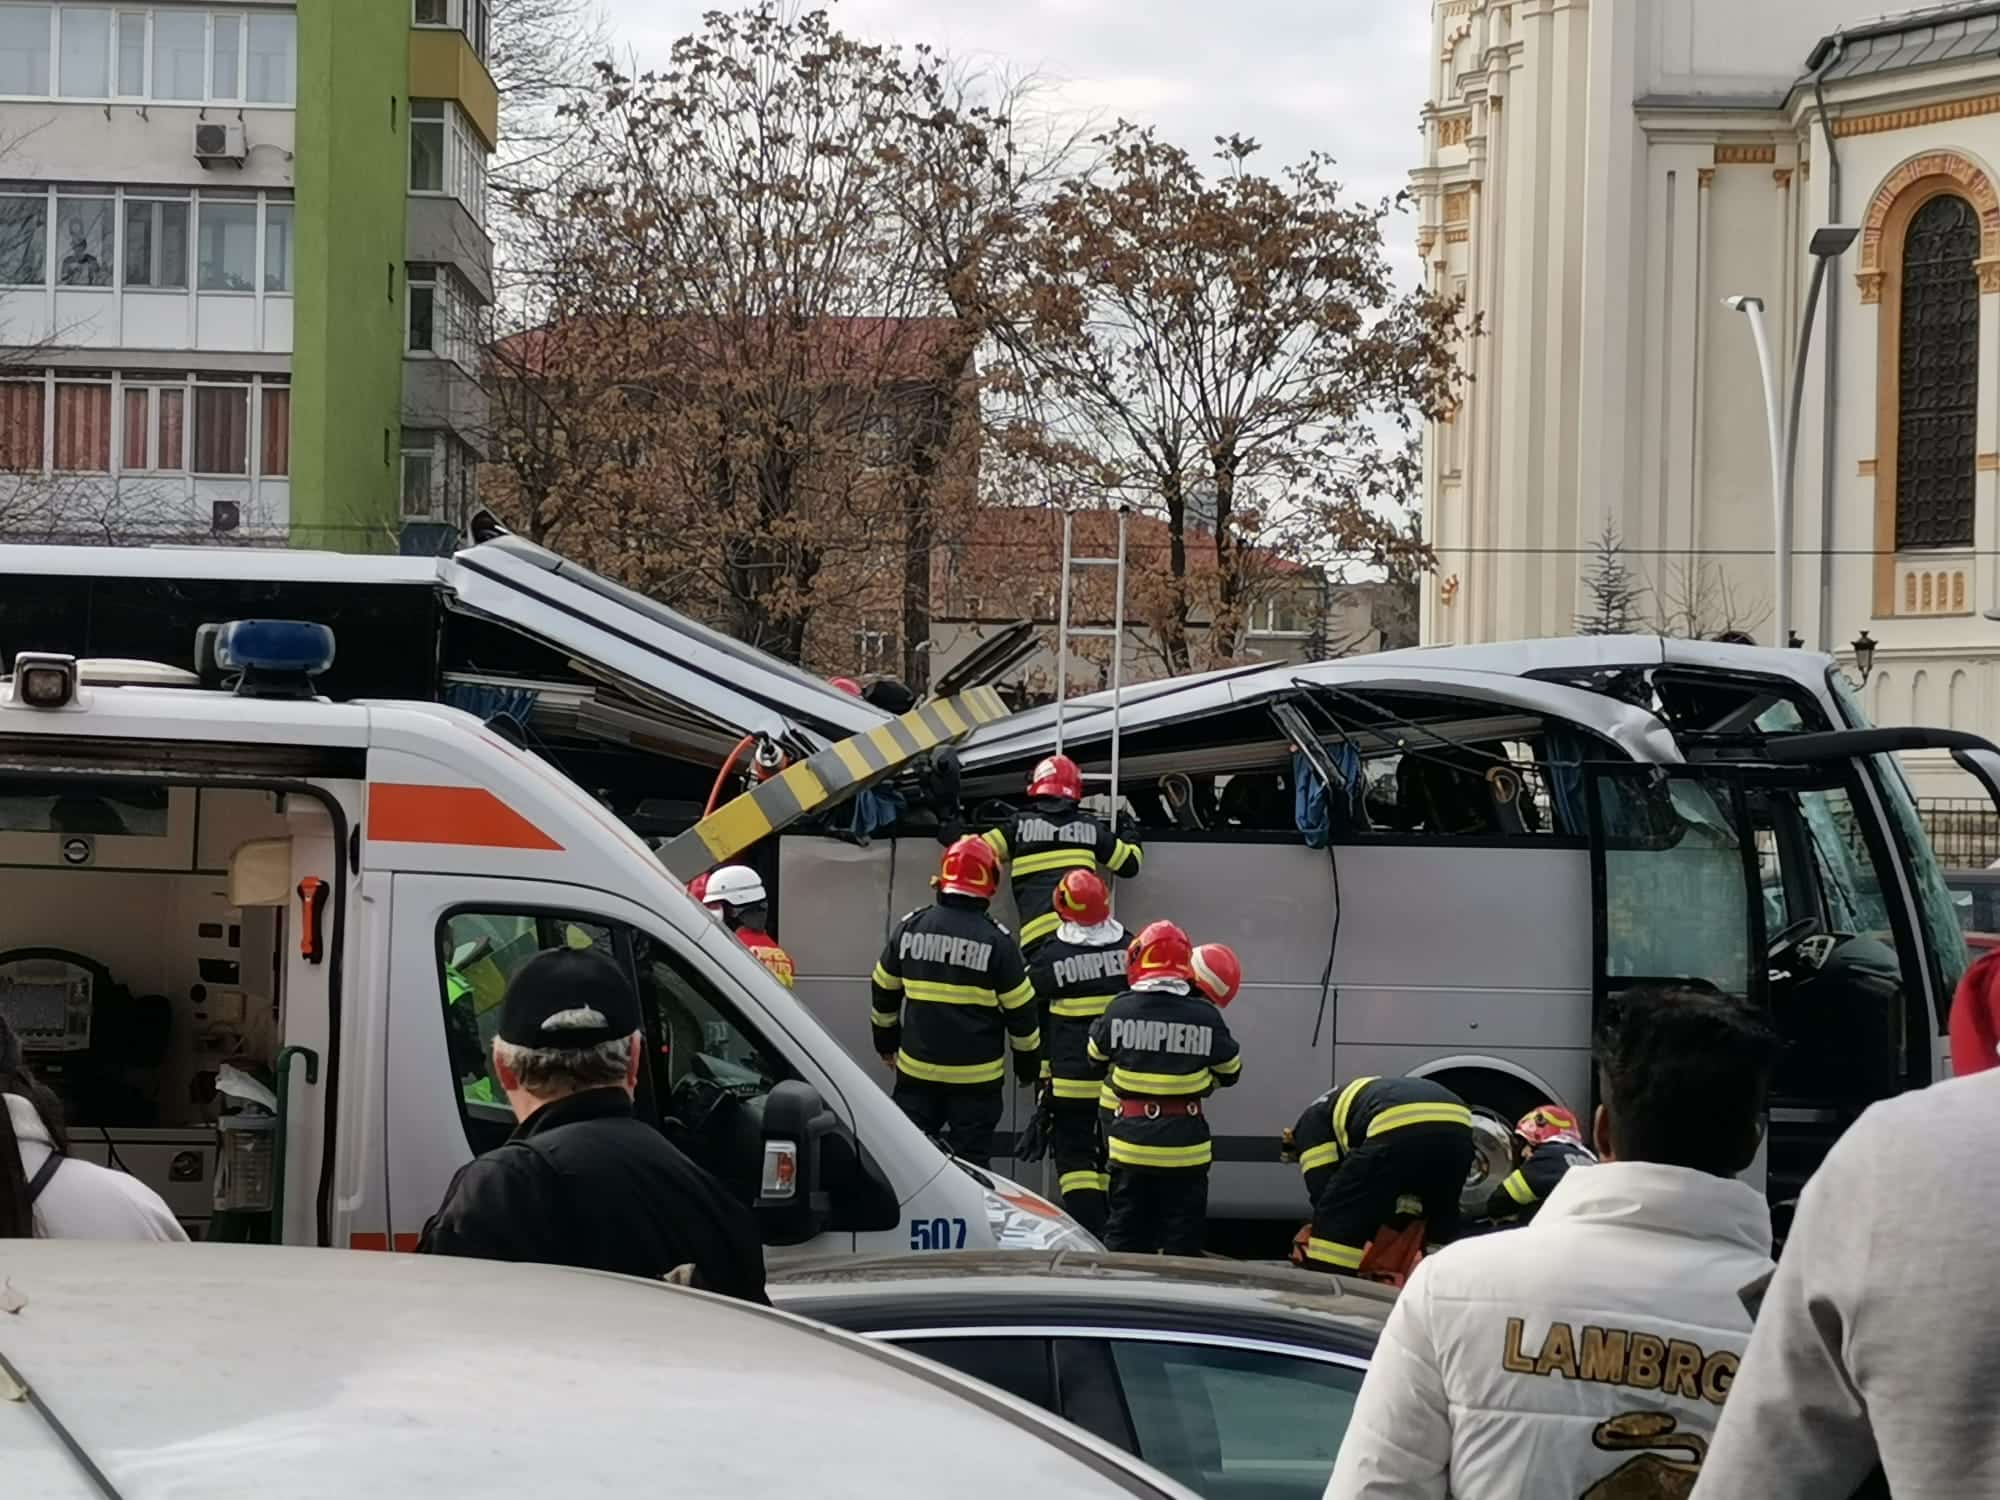 troxaio voukouresti 3 - Τροχαίο-σοκ στη Ρουμανία με λεωφορείο που μετέφερε 47 Έλληνες - Ένας νεκρός, 23 τραυματίες (εικόνες & βίντεο)